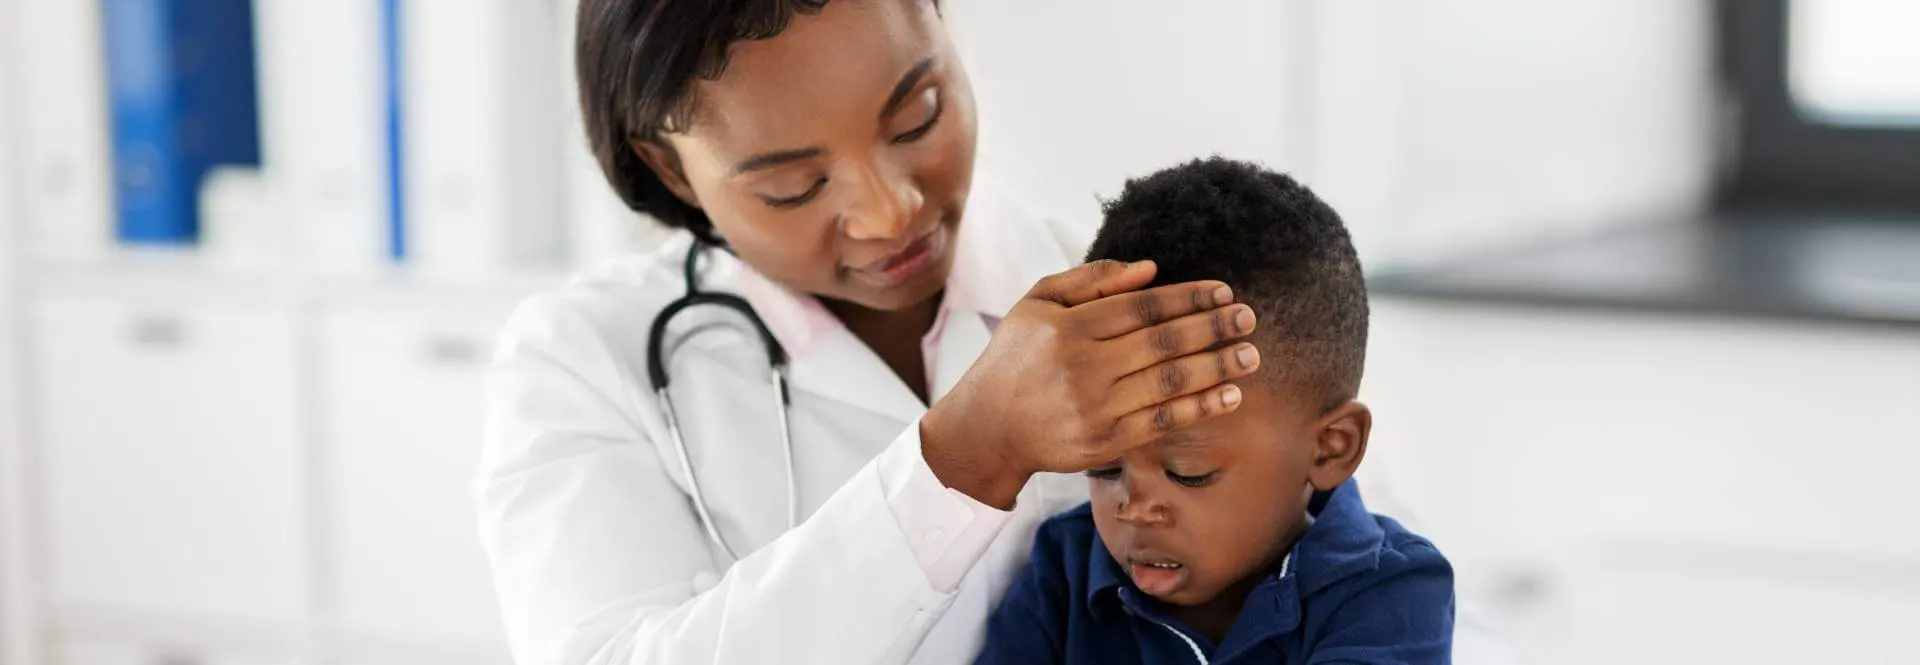 Médica negra examinando um bebê